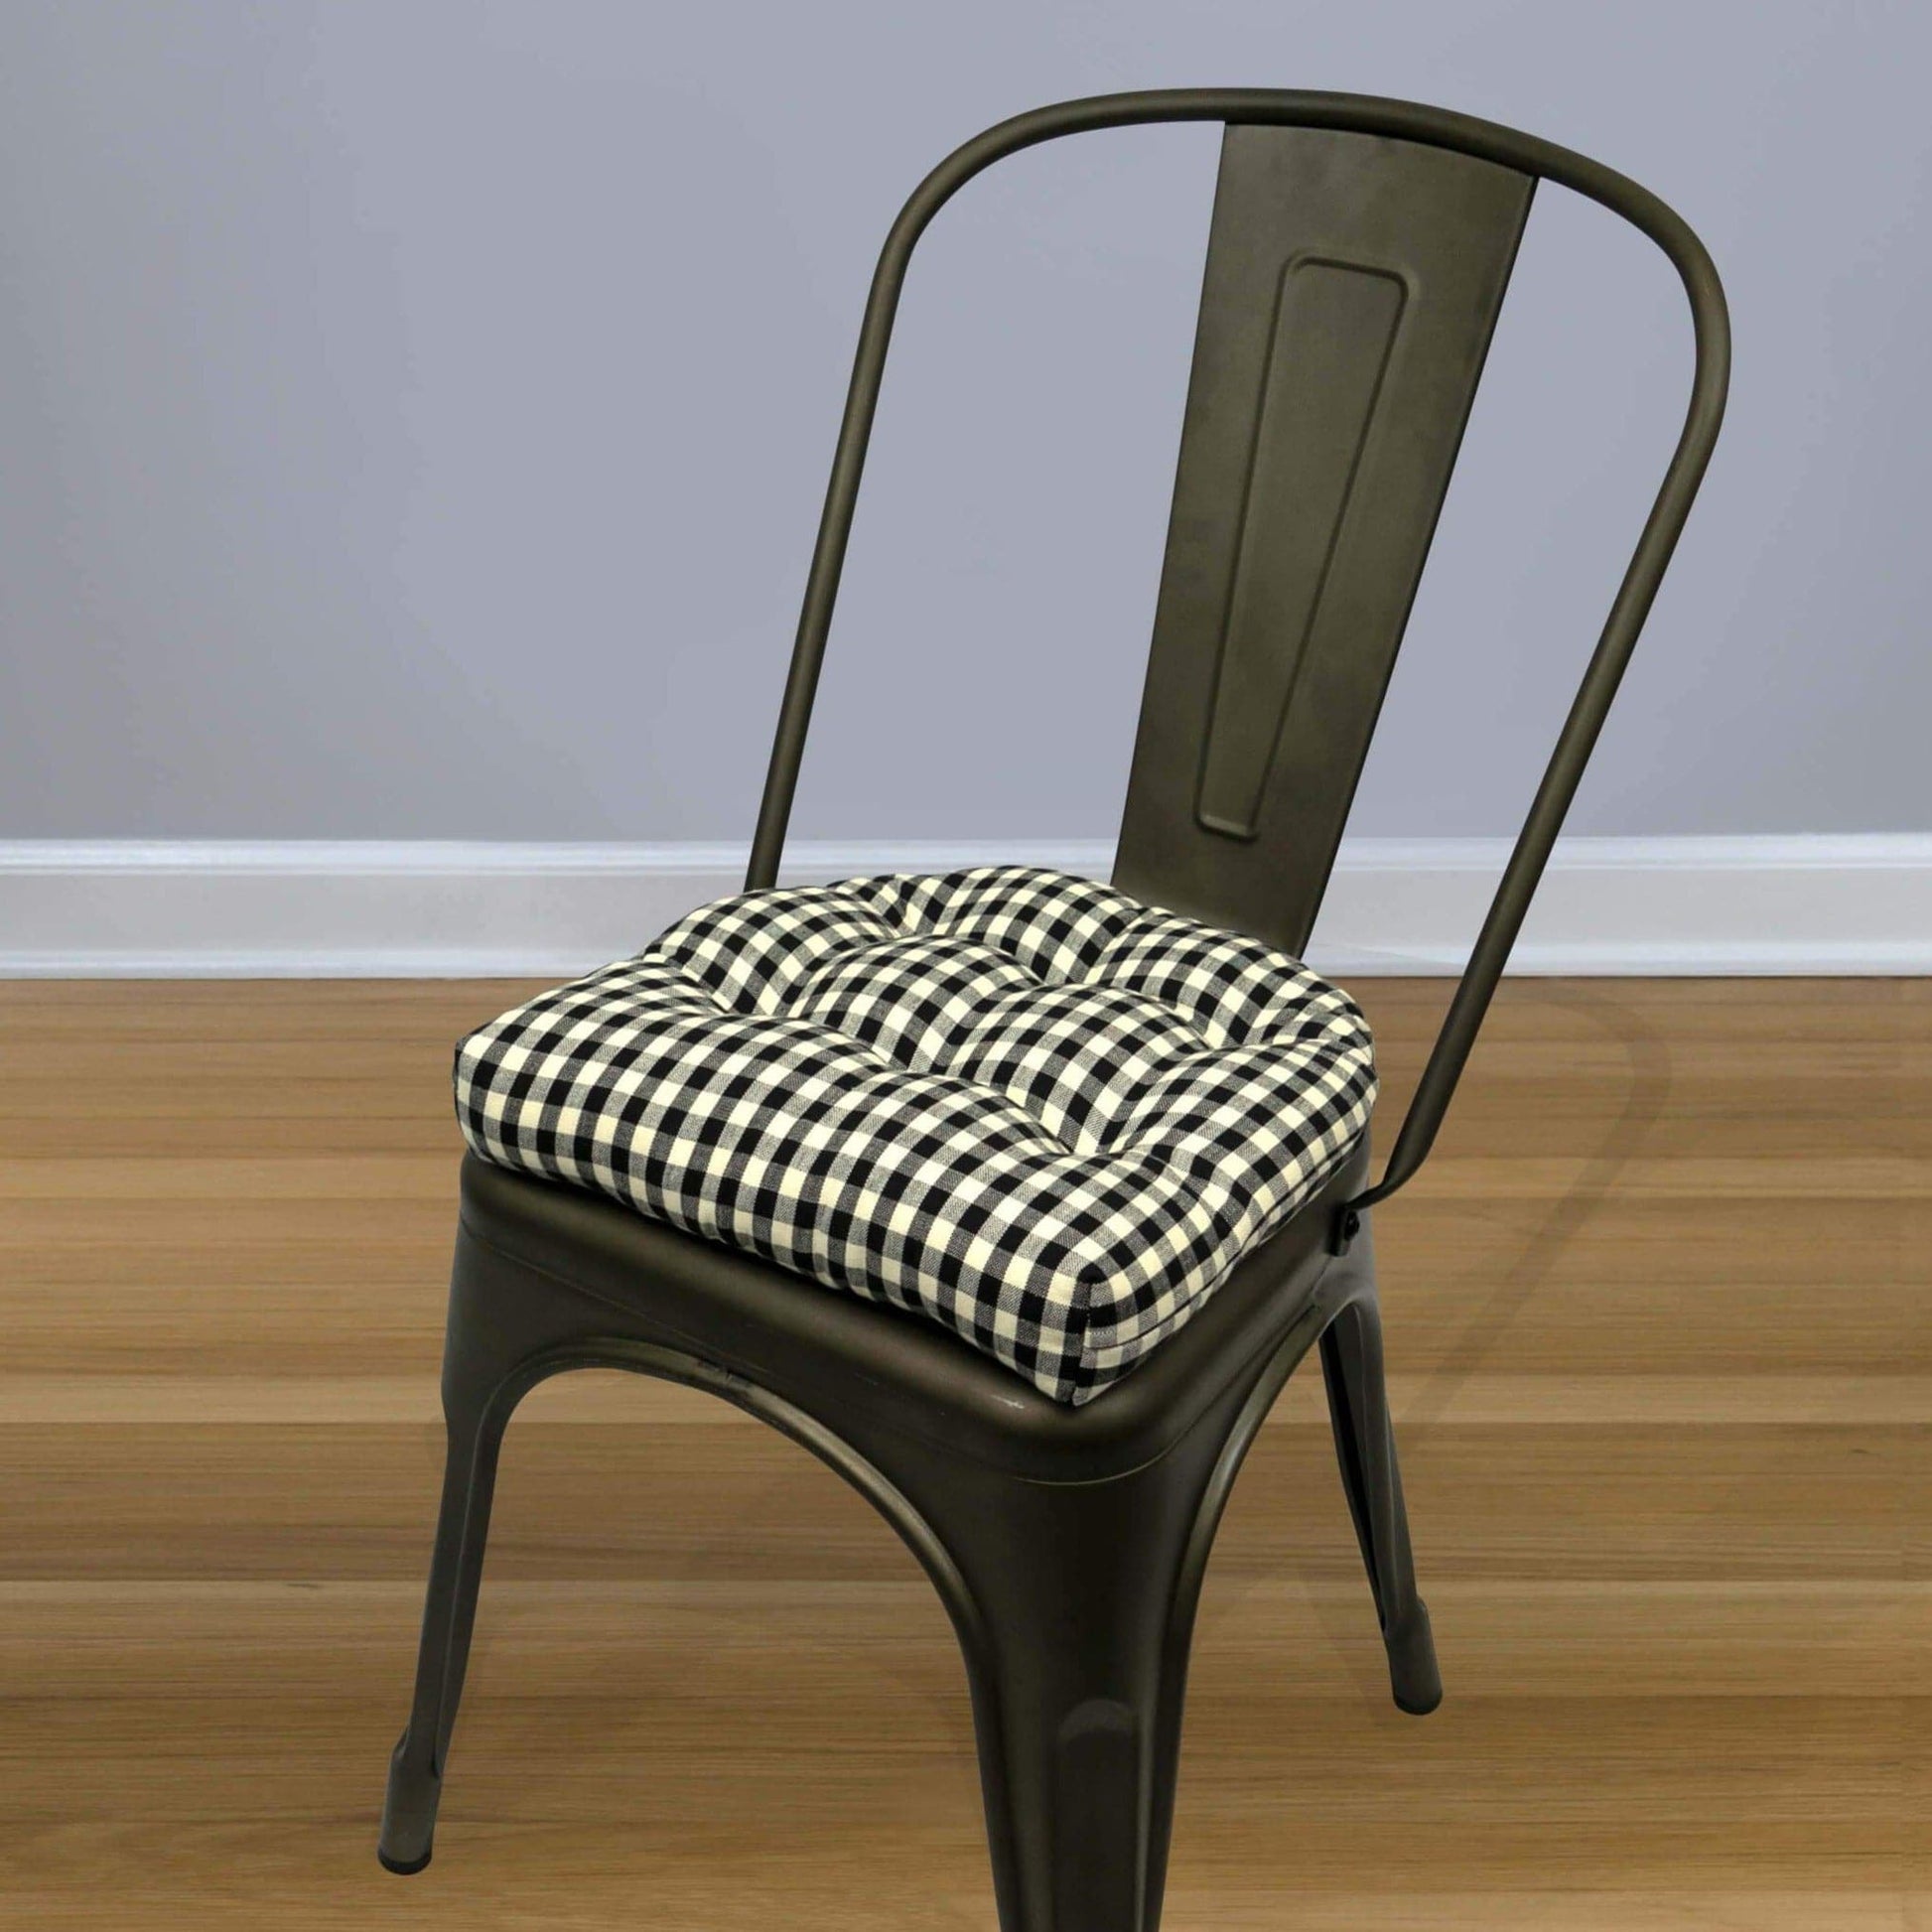 Barnett Home Decor Tolix Chair Pad, Farmhouse Check Black, Metal Chair  Cushions, 14x14 Chair Cushions, Latex Foam Fill Small Seat Cushion with  Ties